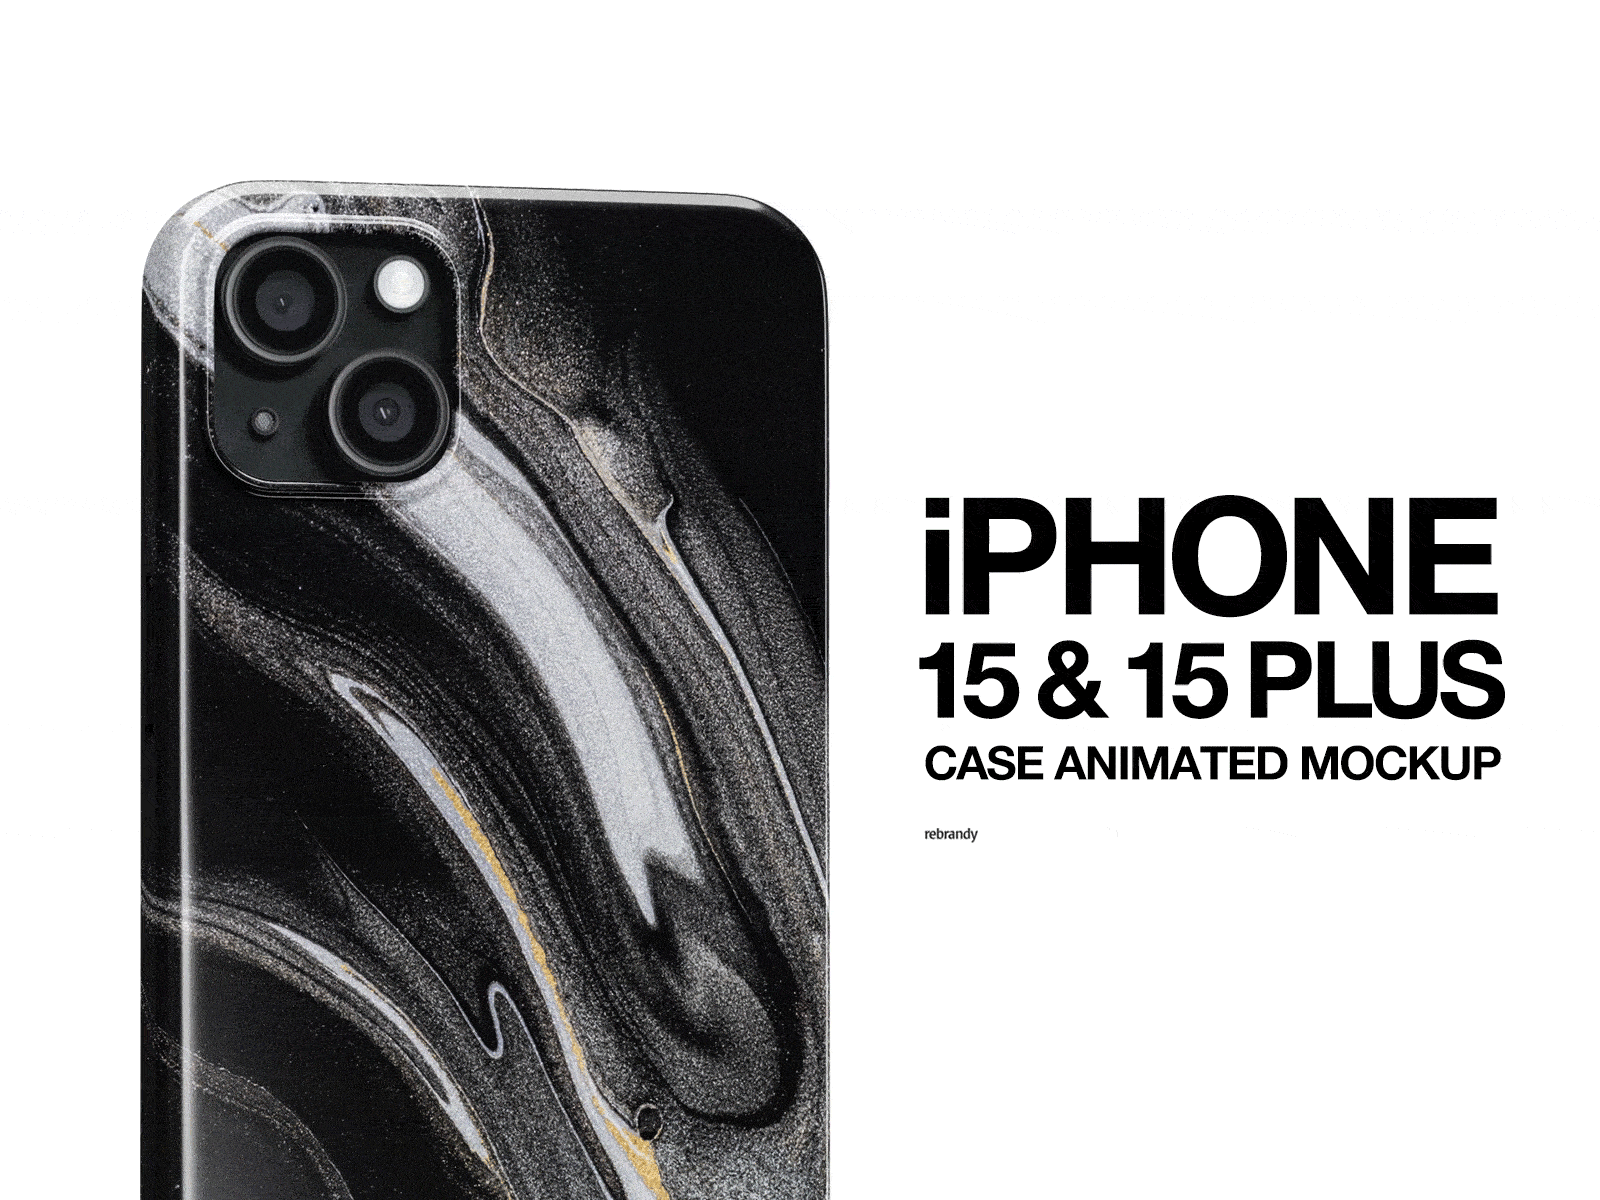 IPhone 15 & 15 Plus Case Animated Mockup mobile case mockup